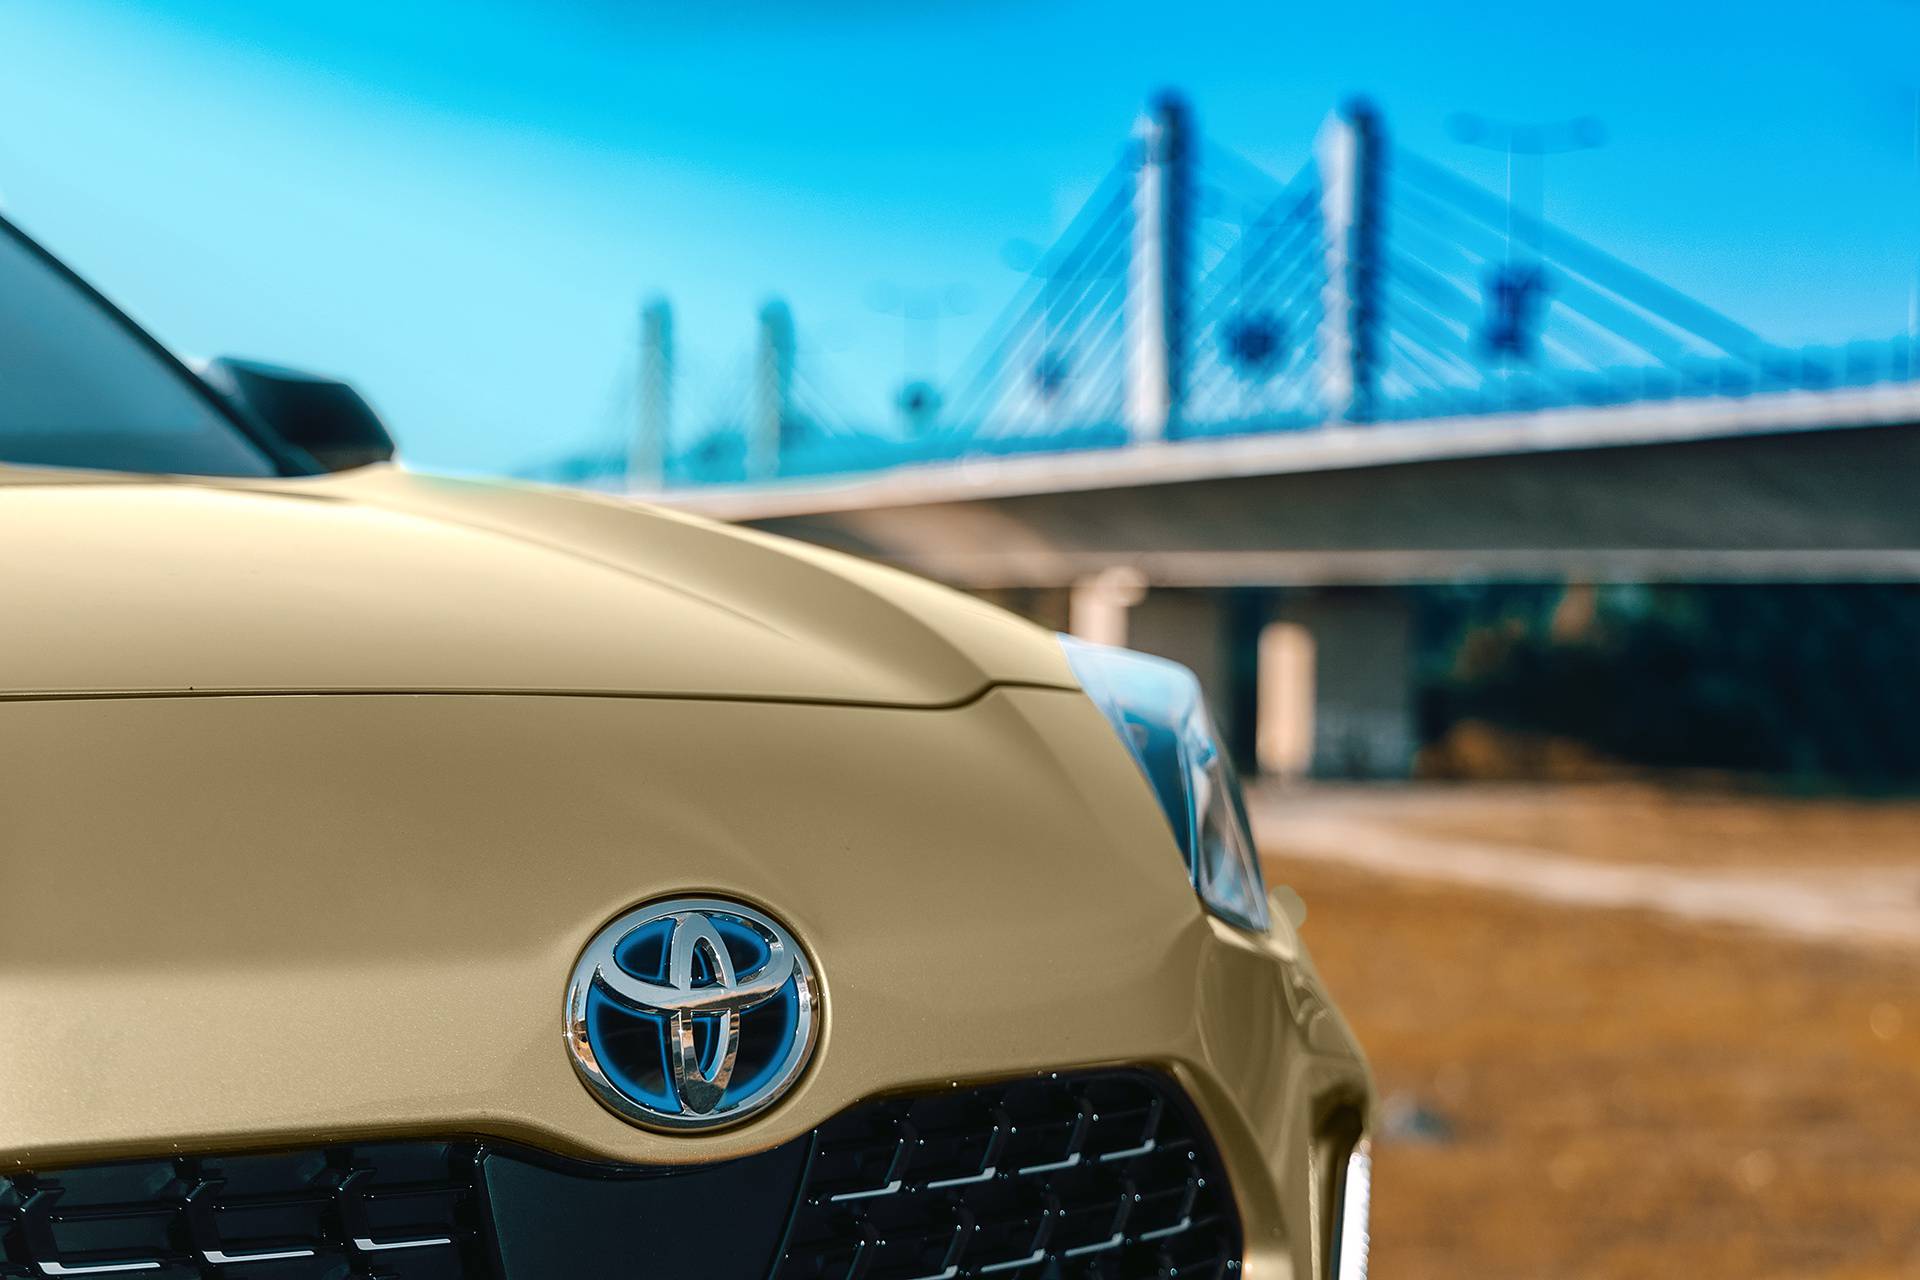 Najvažnija nova Toyota stigla je u Hrvatsku. Već smo je vozili